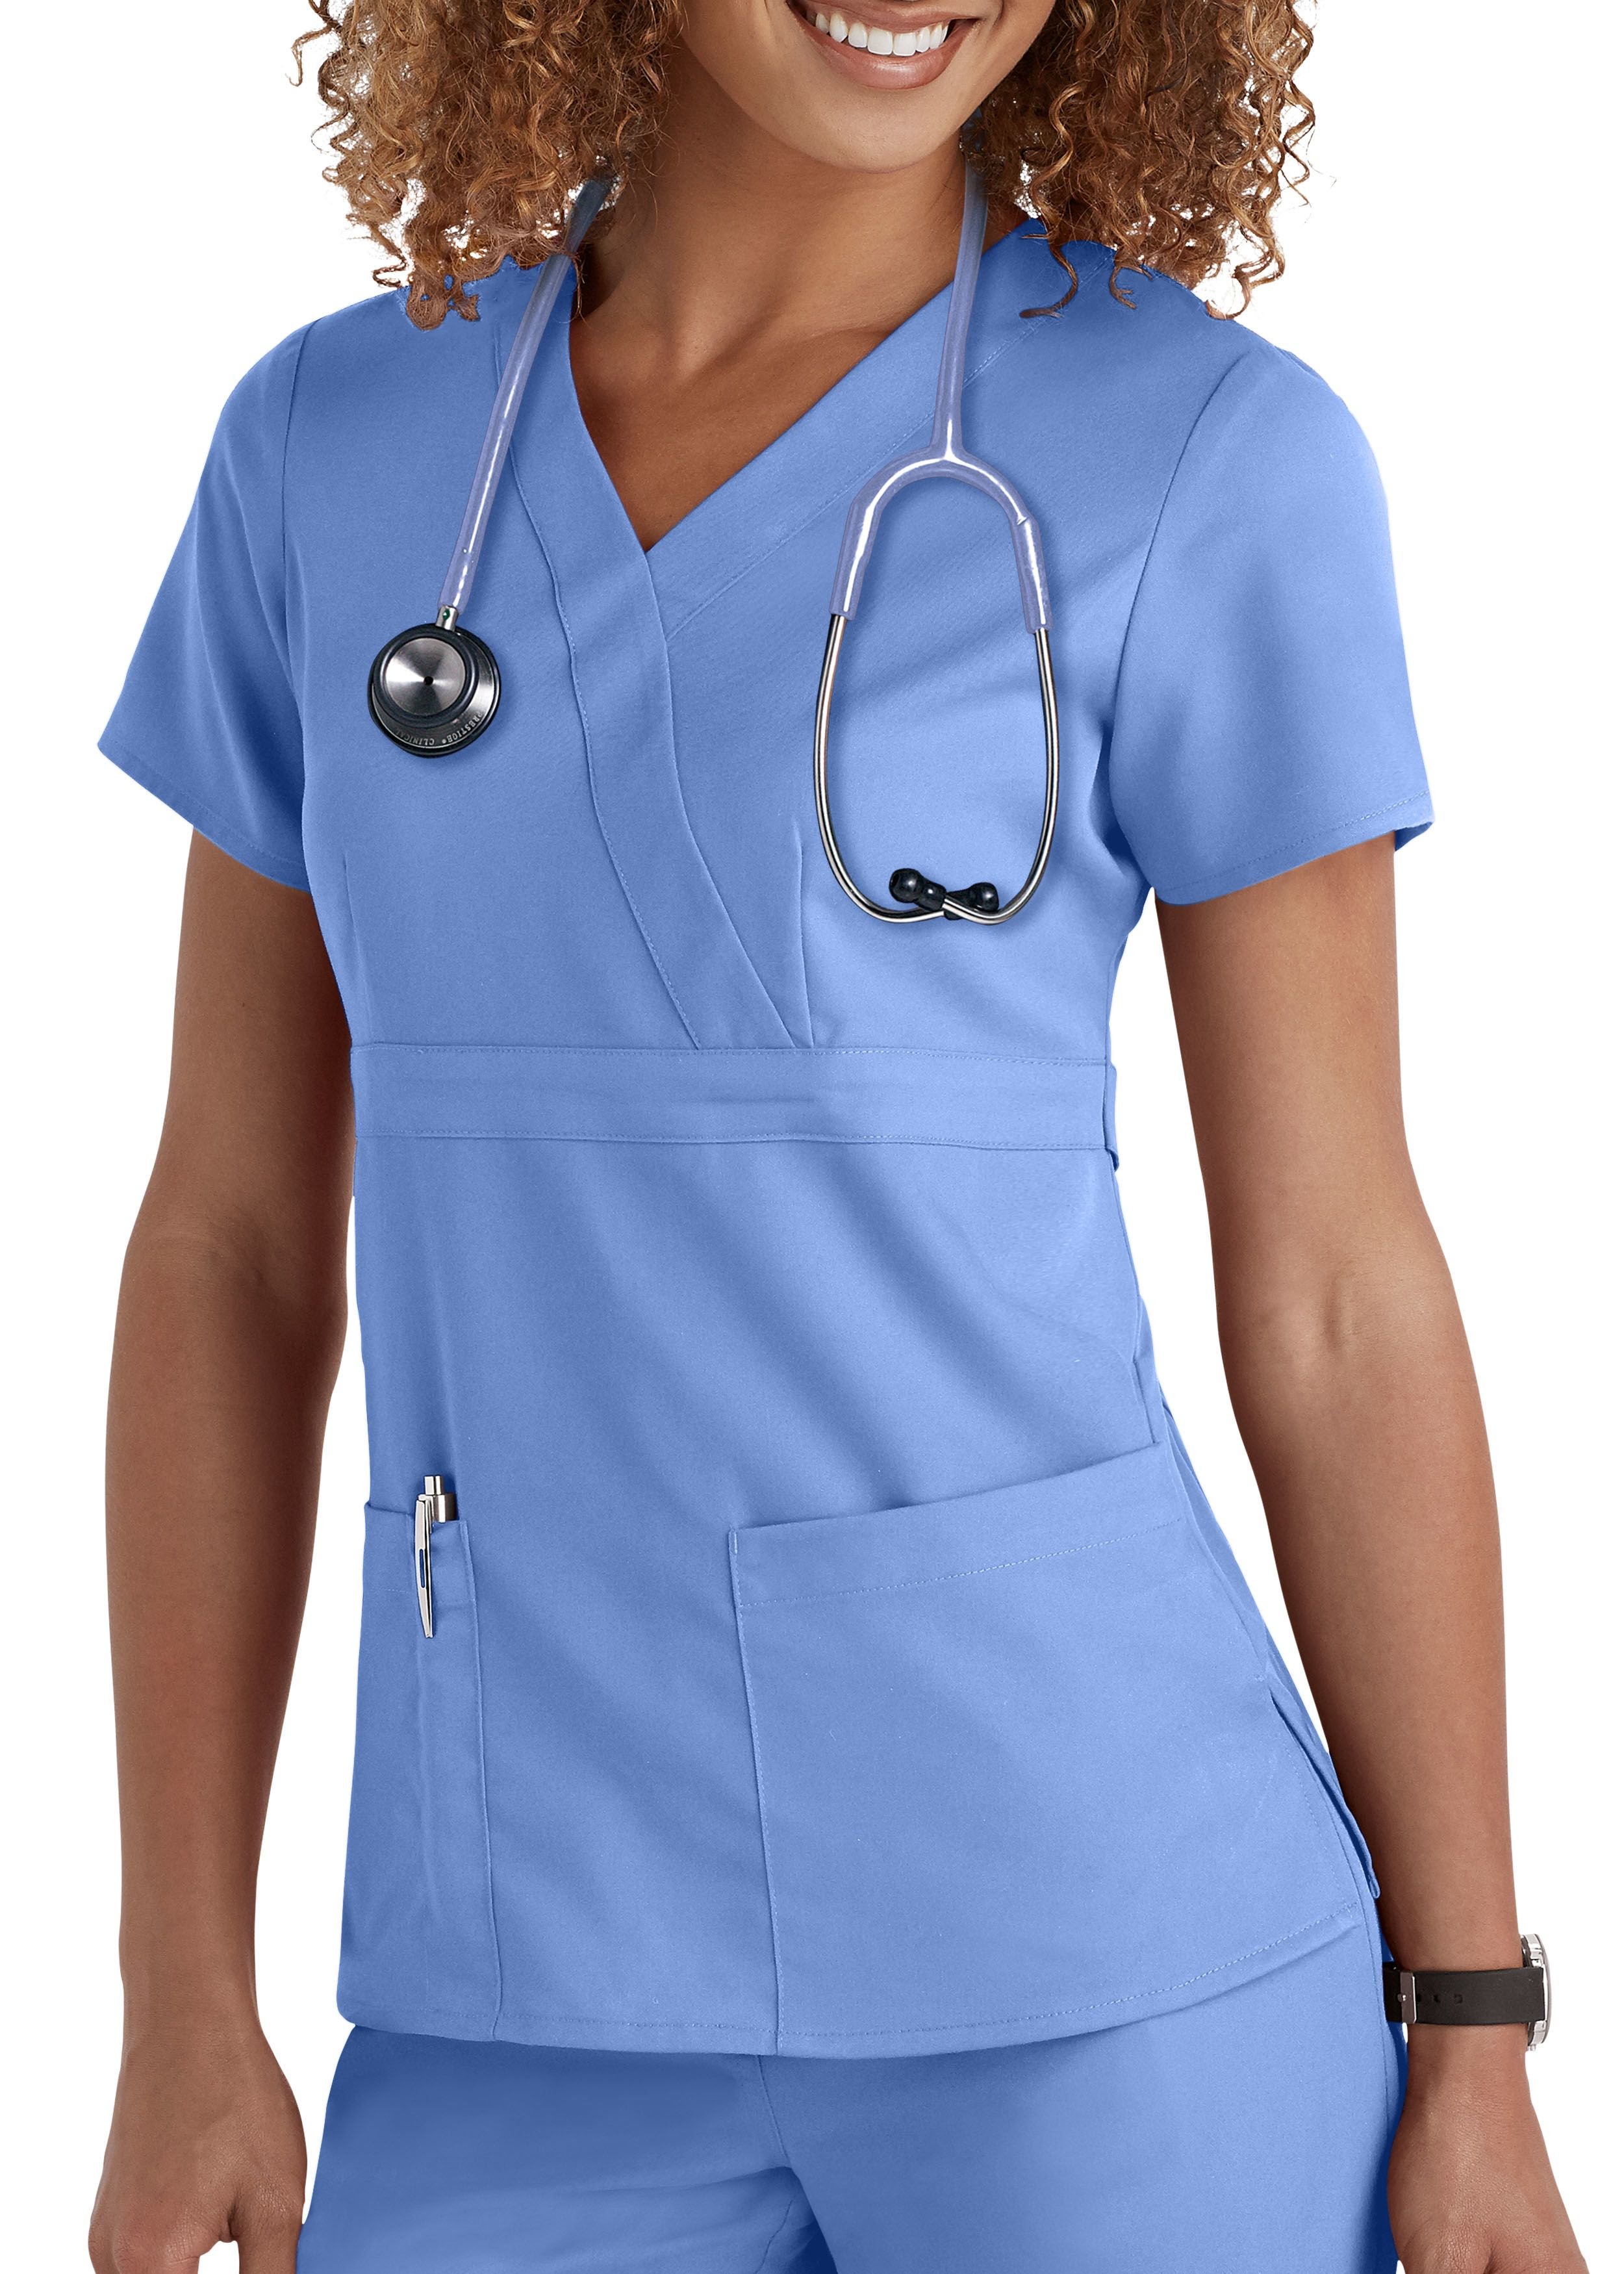 Медицинская форма для врачей. Grey's Anatomy медицинская одежда. Медицинский костюм Grey's Anatomy. 4doctors медицинская одежда. Медицинская форма.